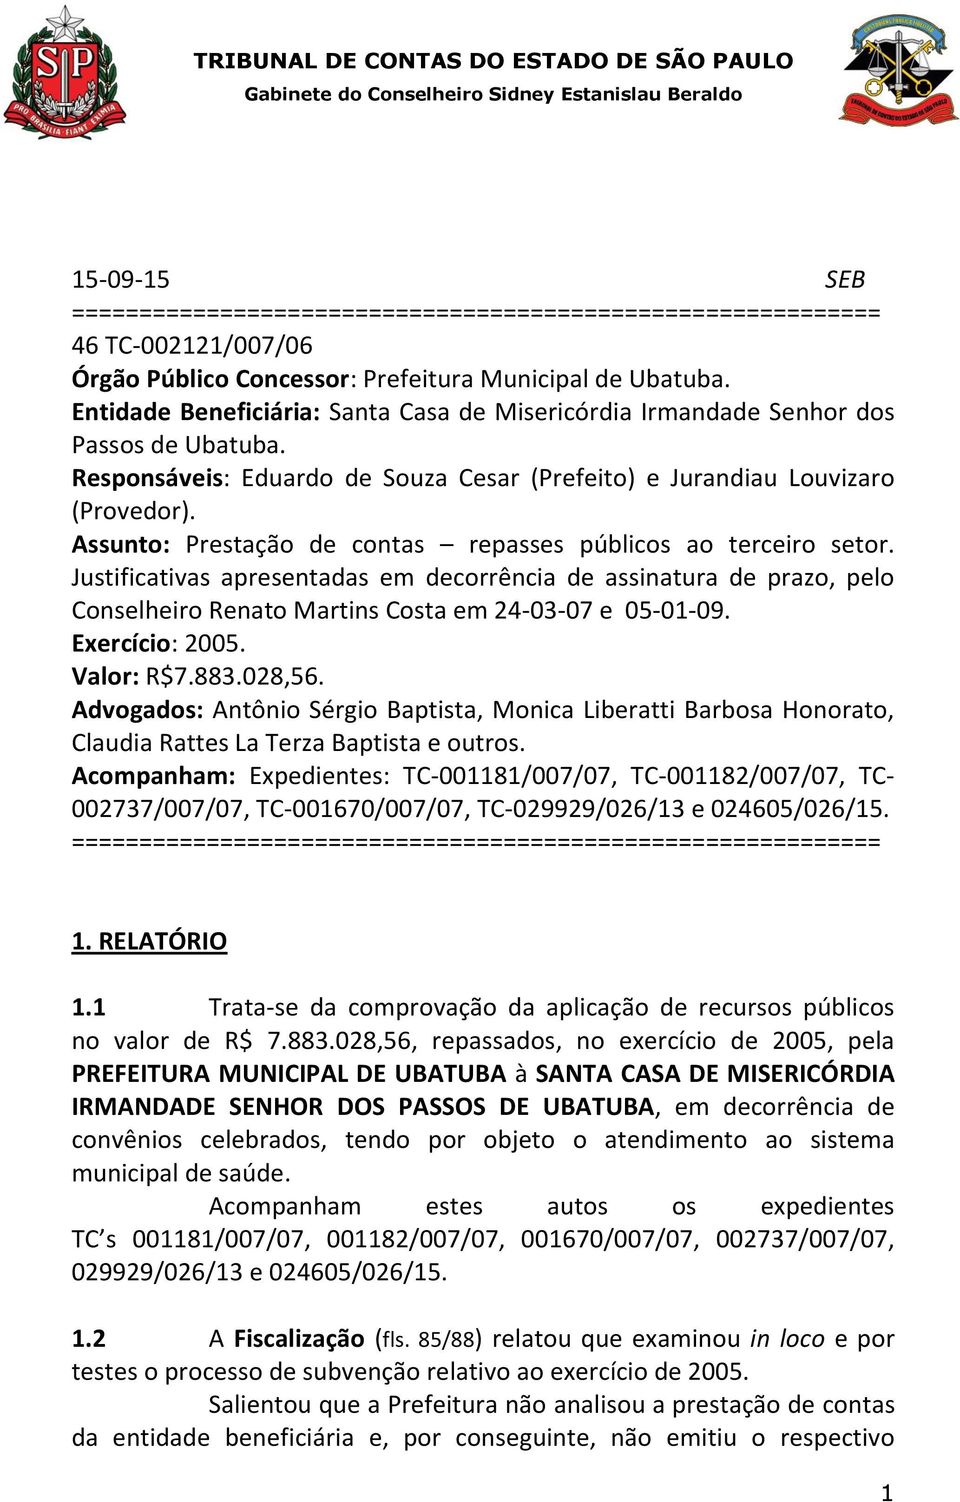 Assunto: Prestação de contas repasses públicos ao terceiro setor. Justificativas apresentadas em decorrência de assinatura de prazo, pelo Conselheiro Renato Martins Costa em 24-03-07 e 05-01-09.